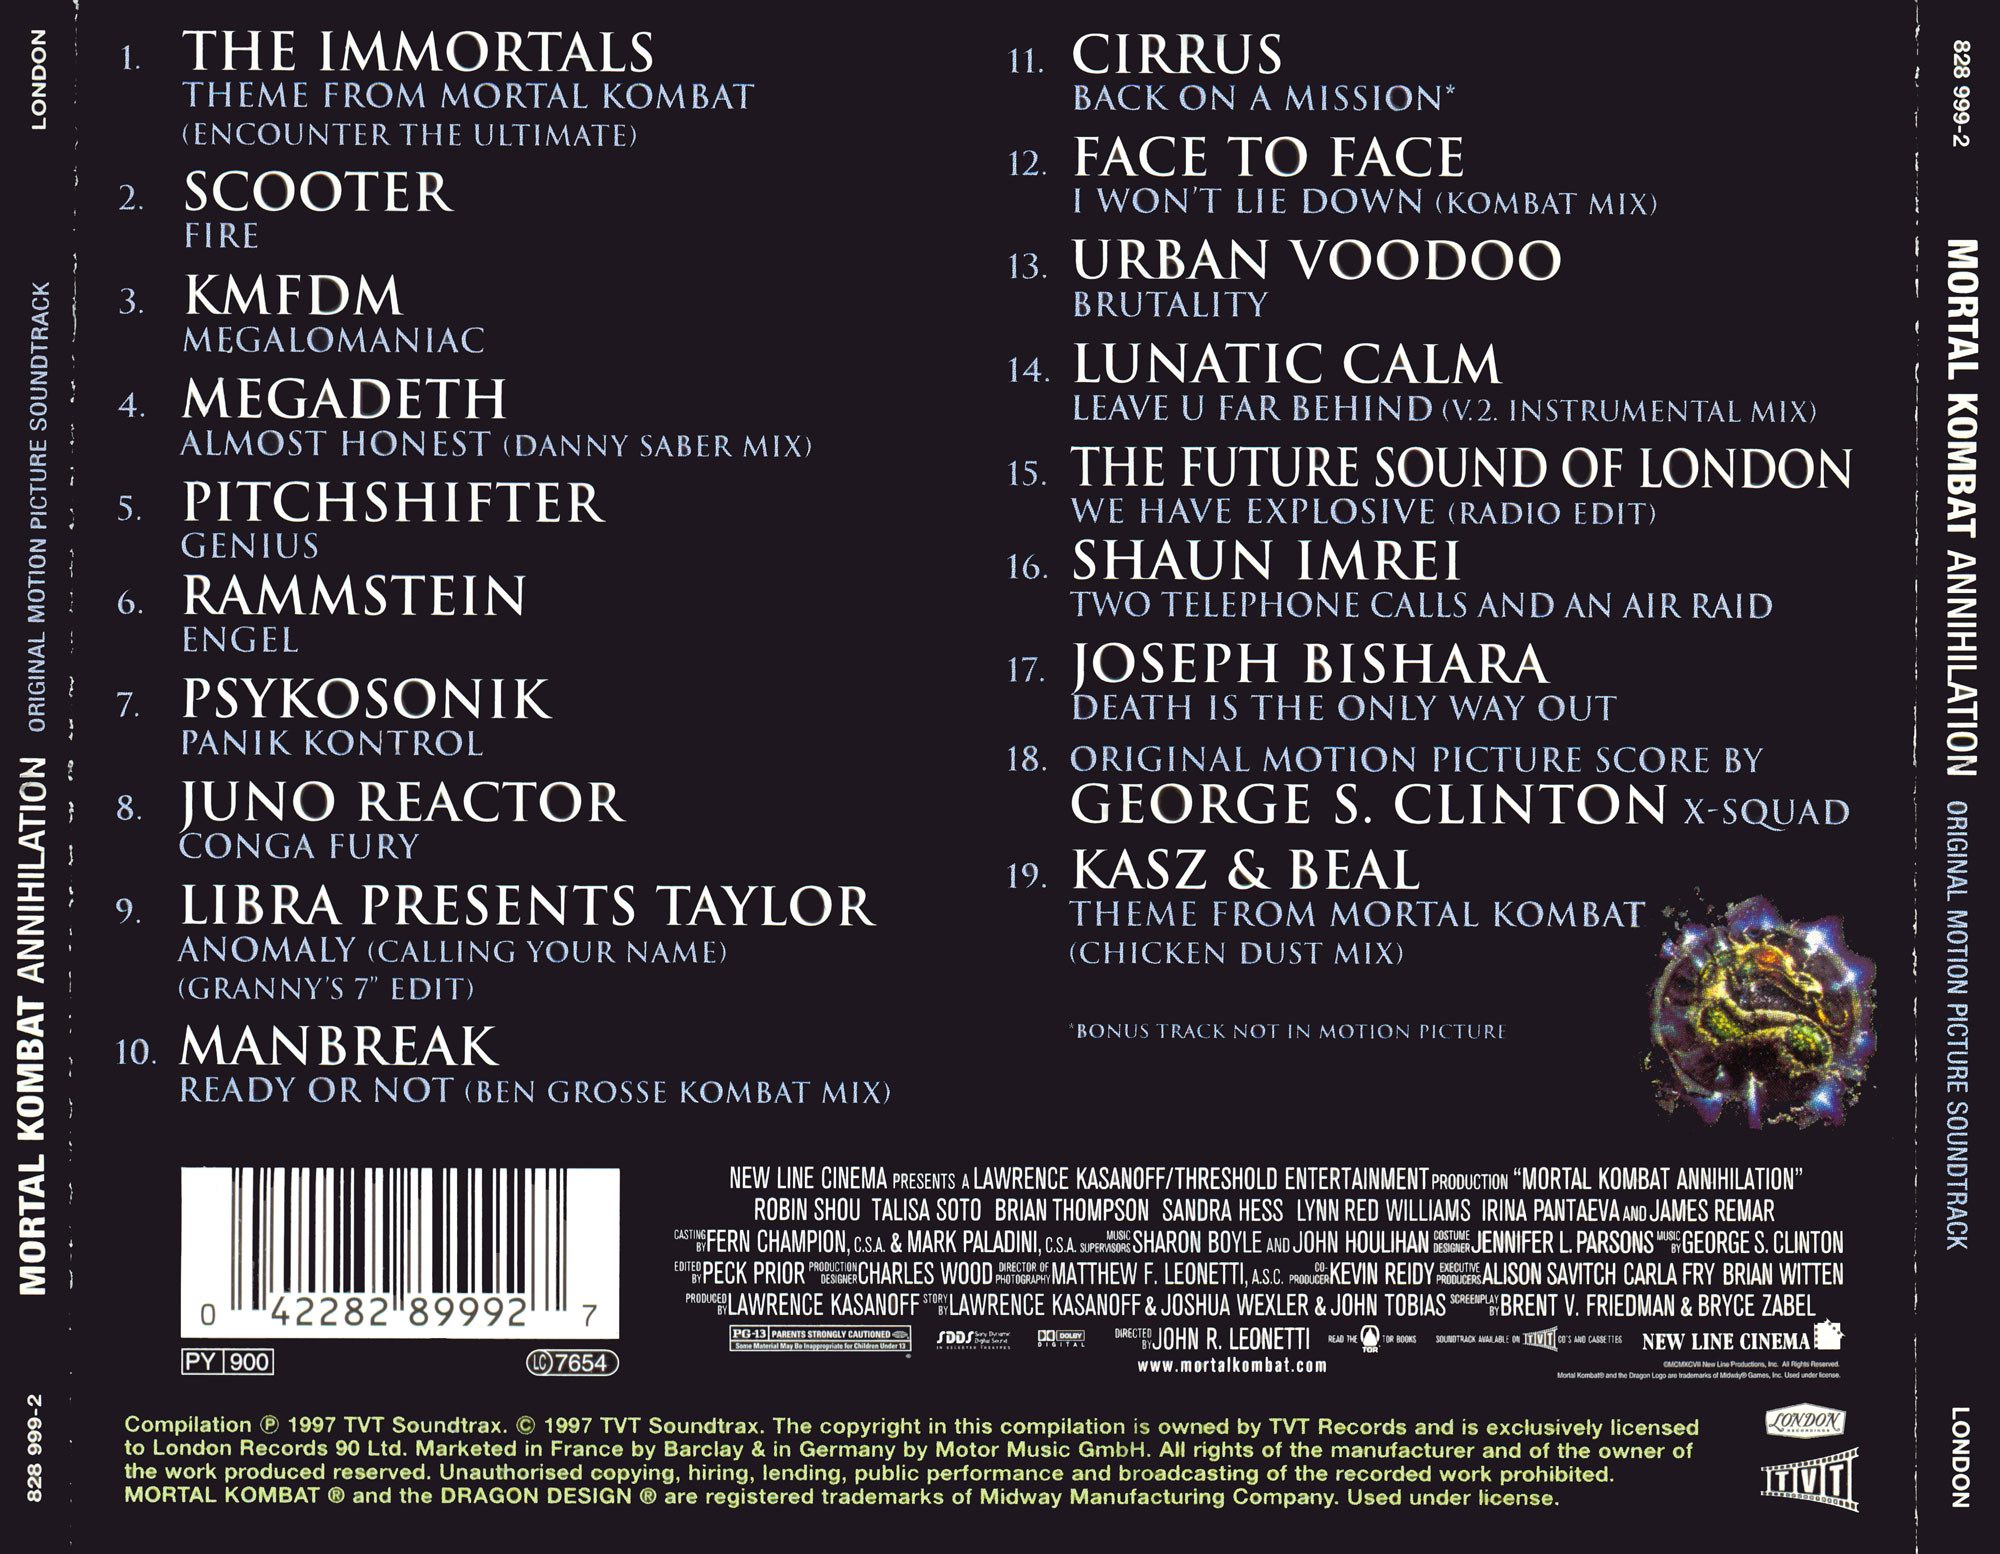 Бесплатная песня мортал комбат. Кассета мортал комбат. OST Mortal Kombat 1995 обложка. Mortal Kombat 2 Annihilation OST. Аудиокассета Mortal Kombat.